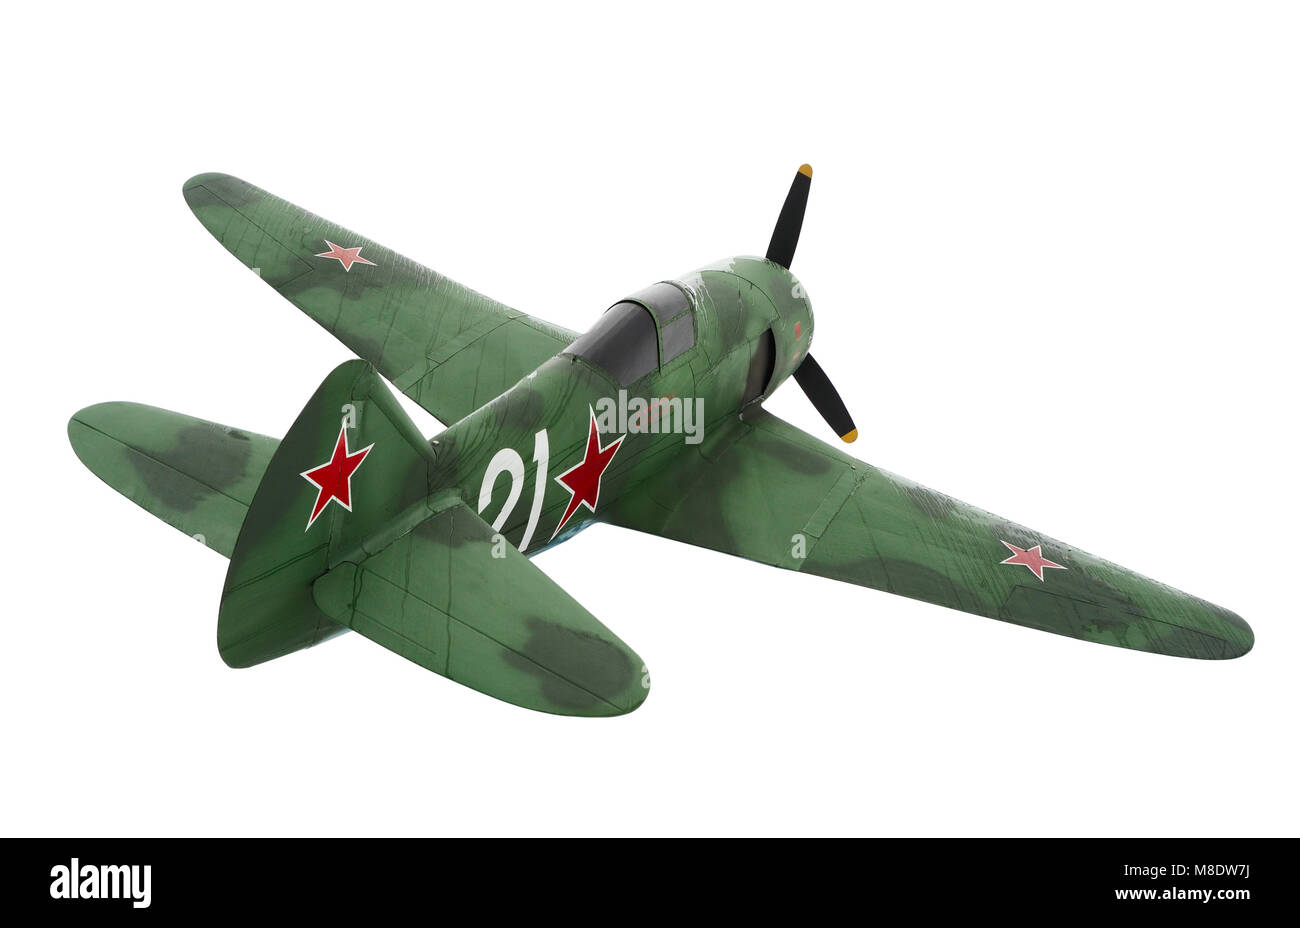 Antiguos aviones militares soviéticos LA-7 aviones de combate de la Segunda  Guerra Mundial Fotografía de stock - Alamy